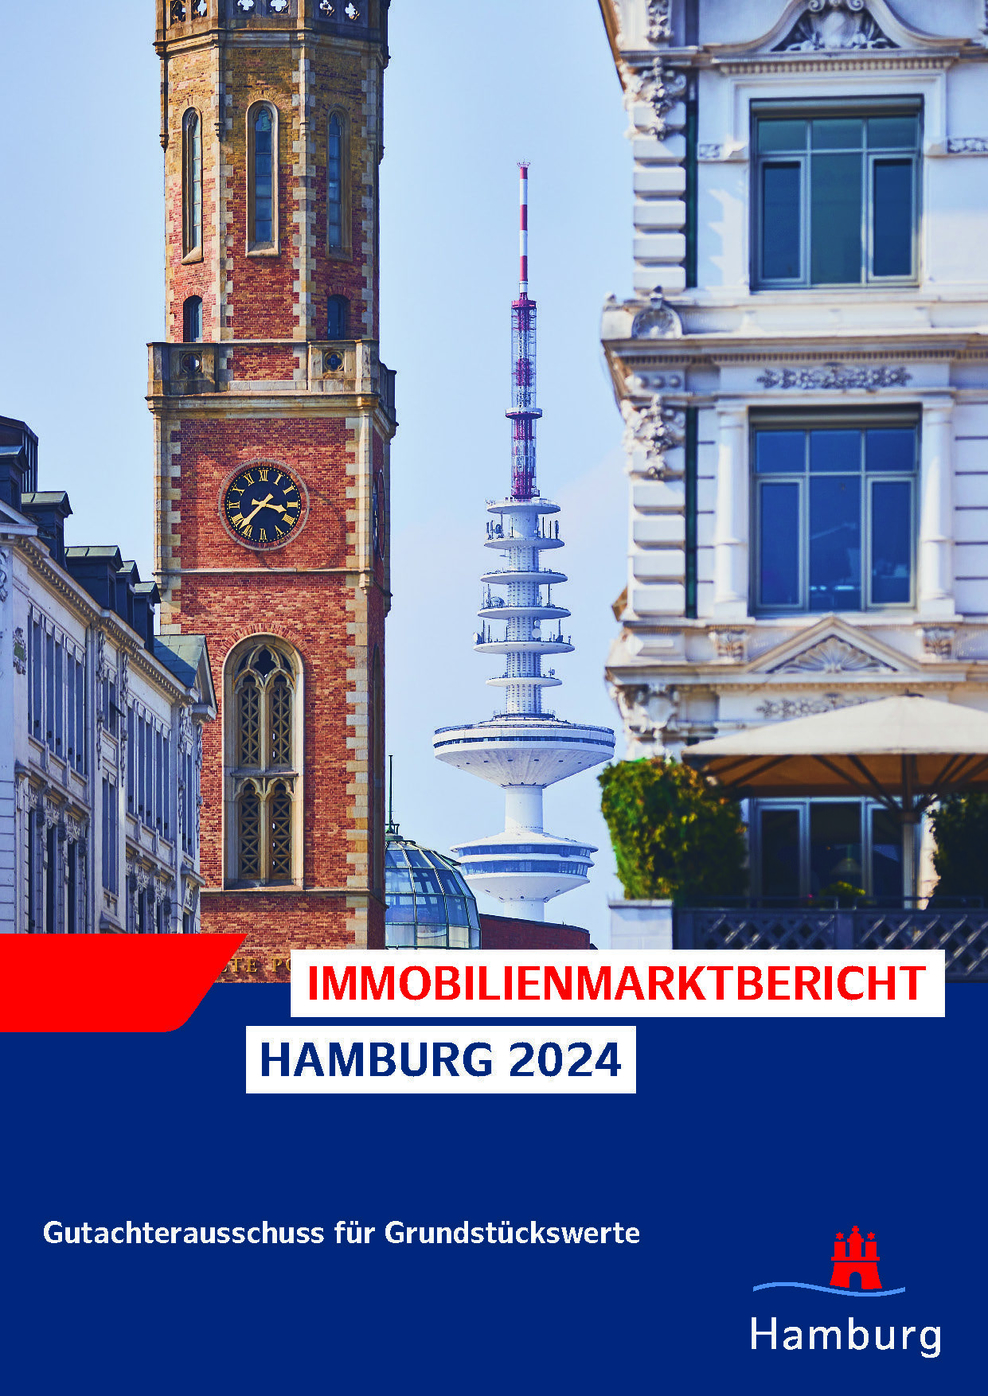 Immobilienmarktbericht Hamburg 2024